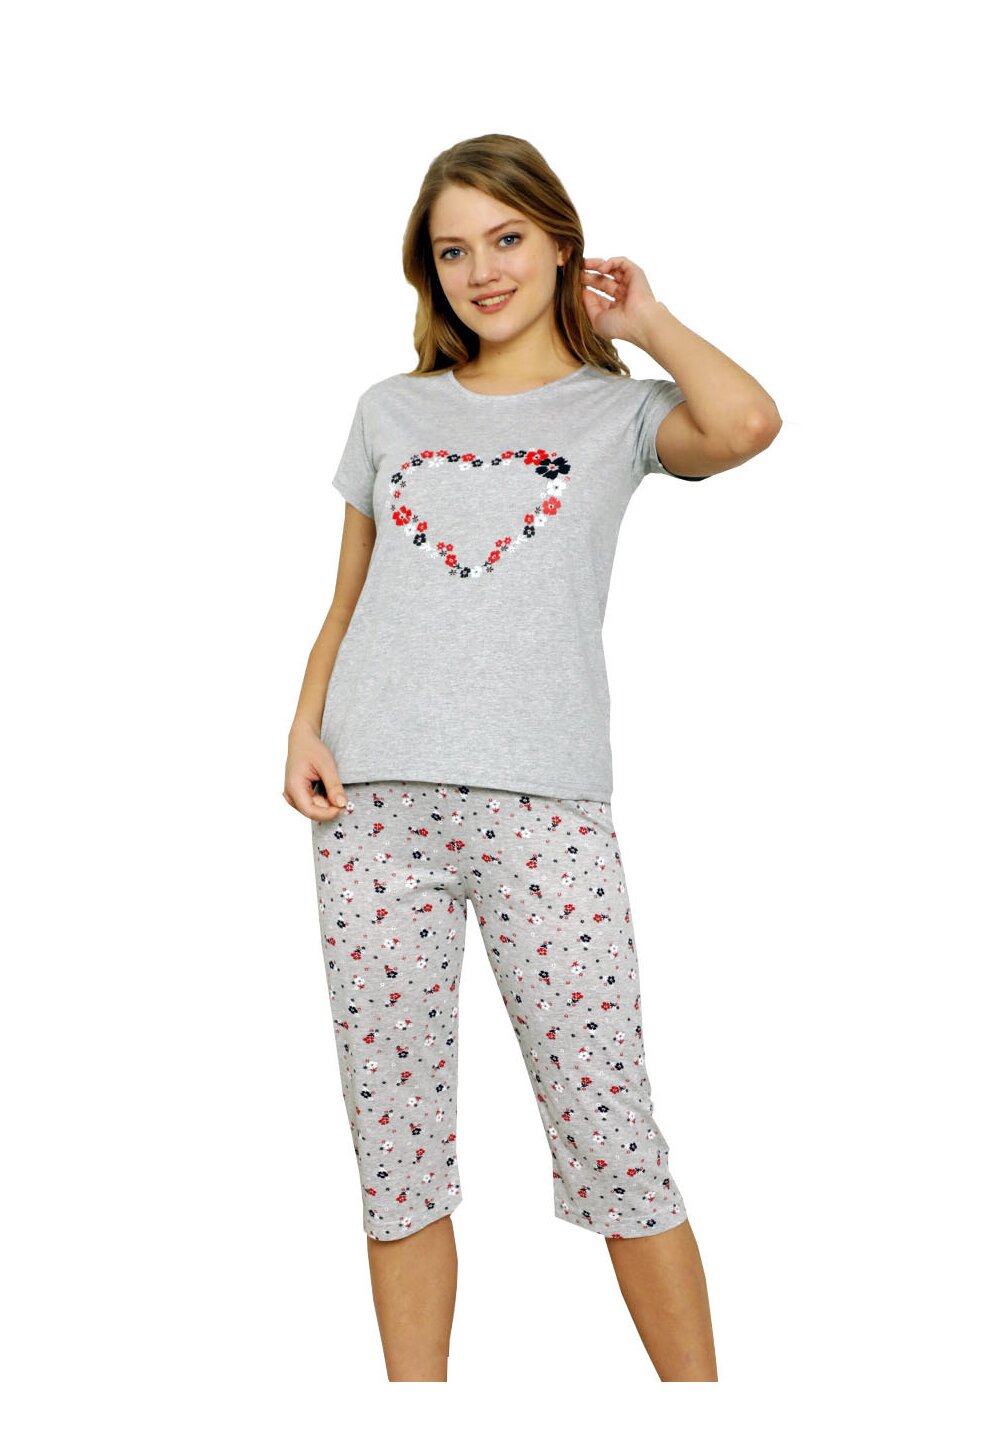 Pijama femei, pantalon 3/4, Love, gri cu floricele Prichindel